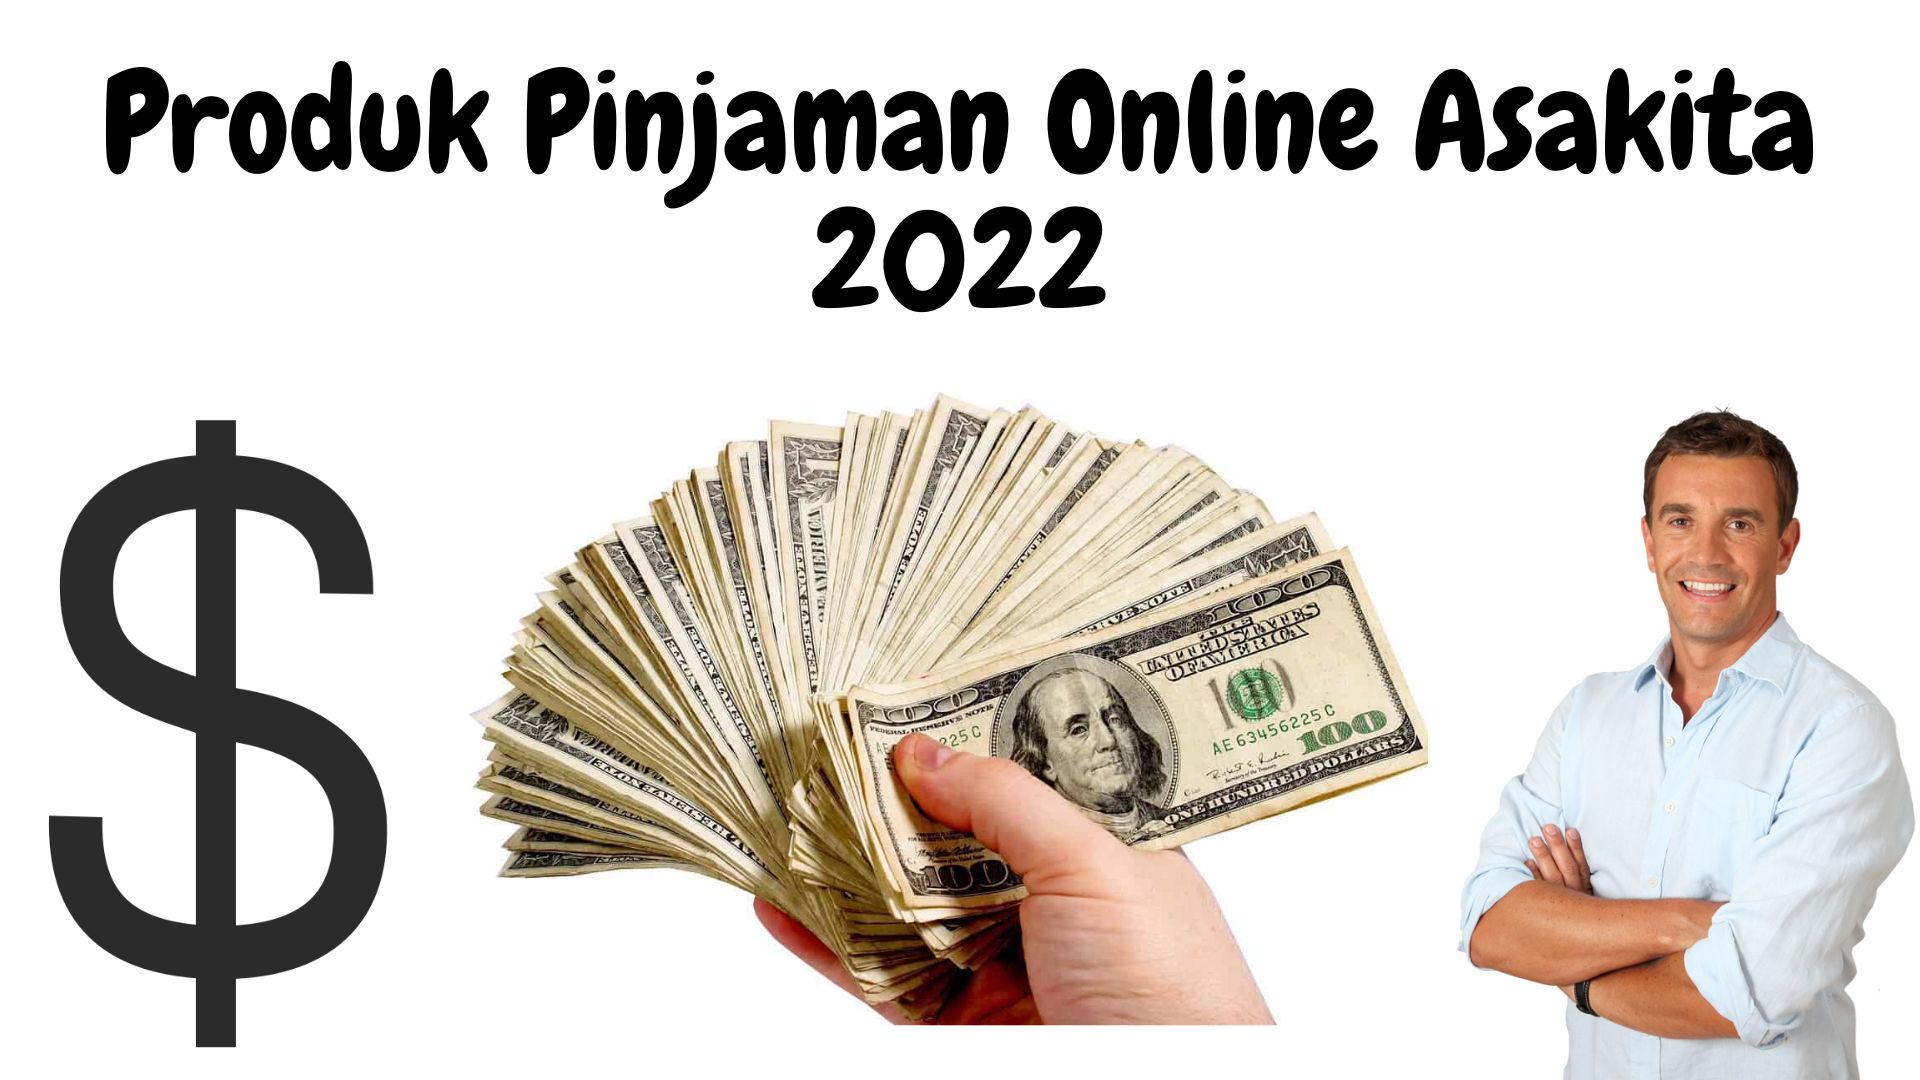 Produk pinjaman online asakita 2022